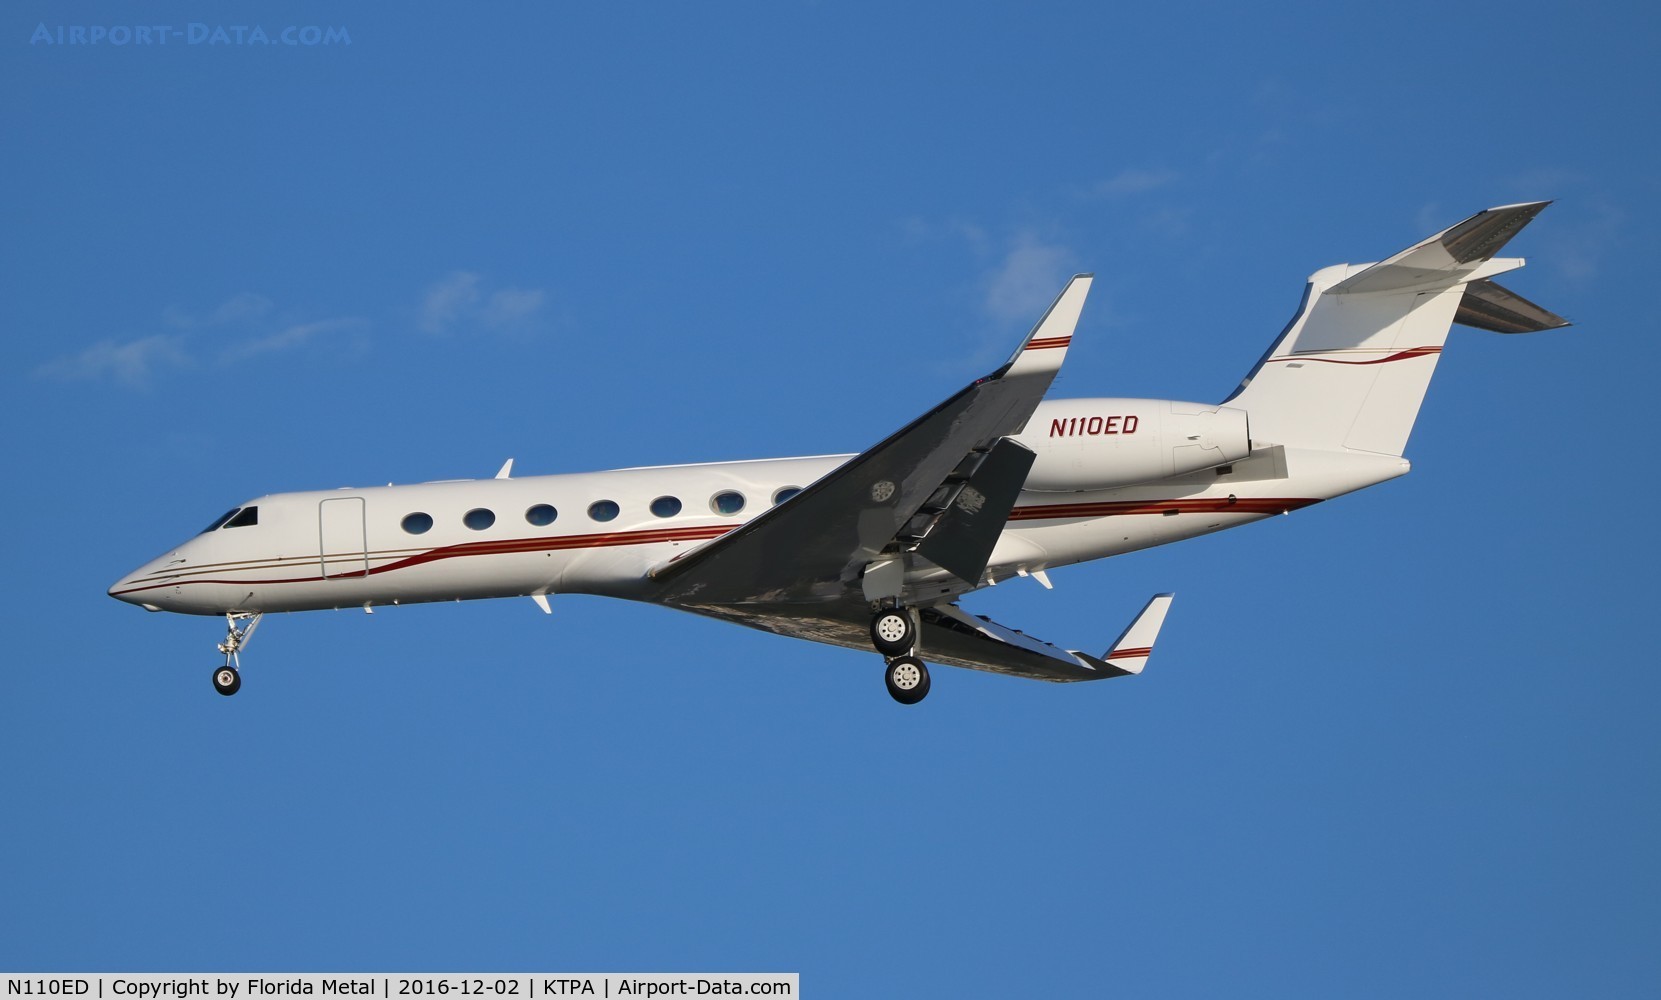 N110ED, 2006 Gulfstream Aerospace GV-SP (G500) C/N 5136, G550 zx